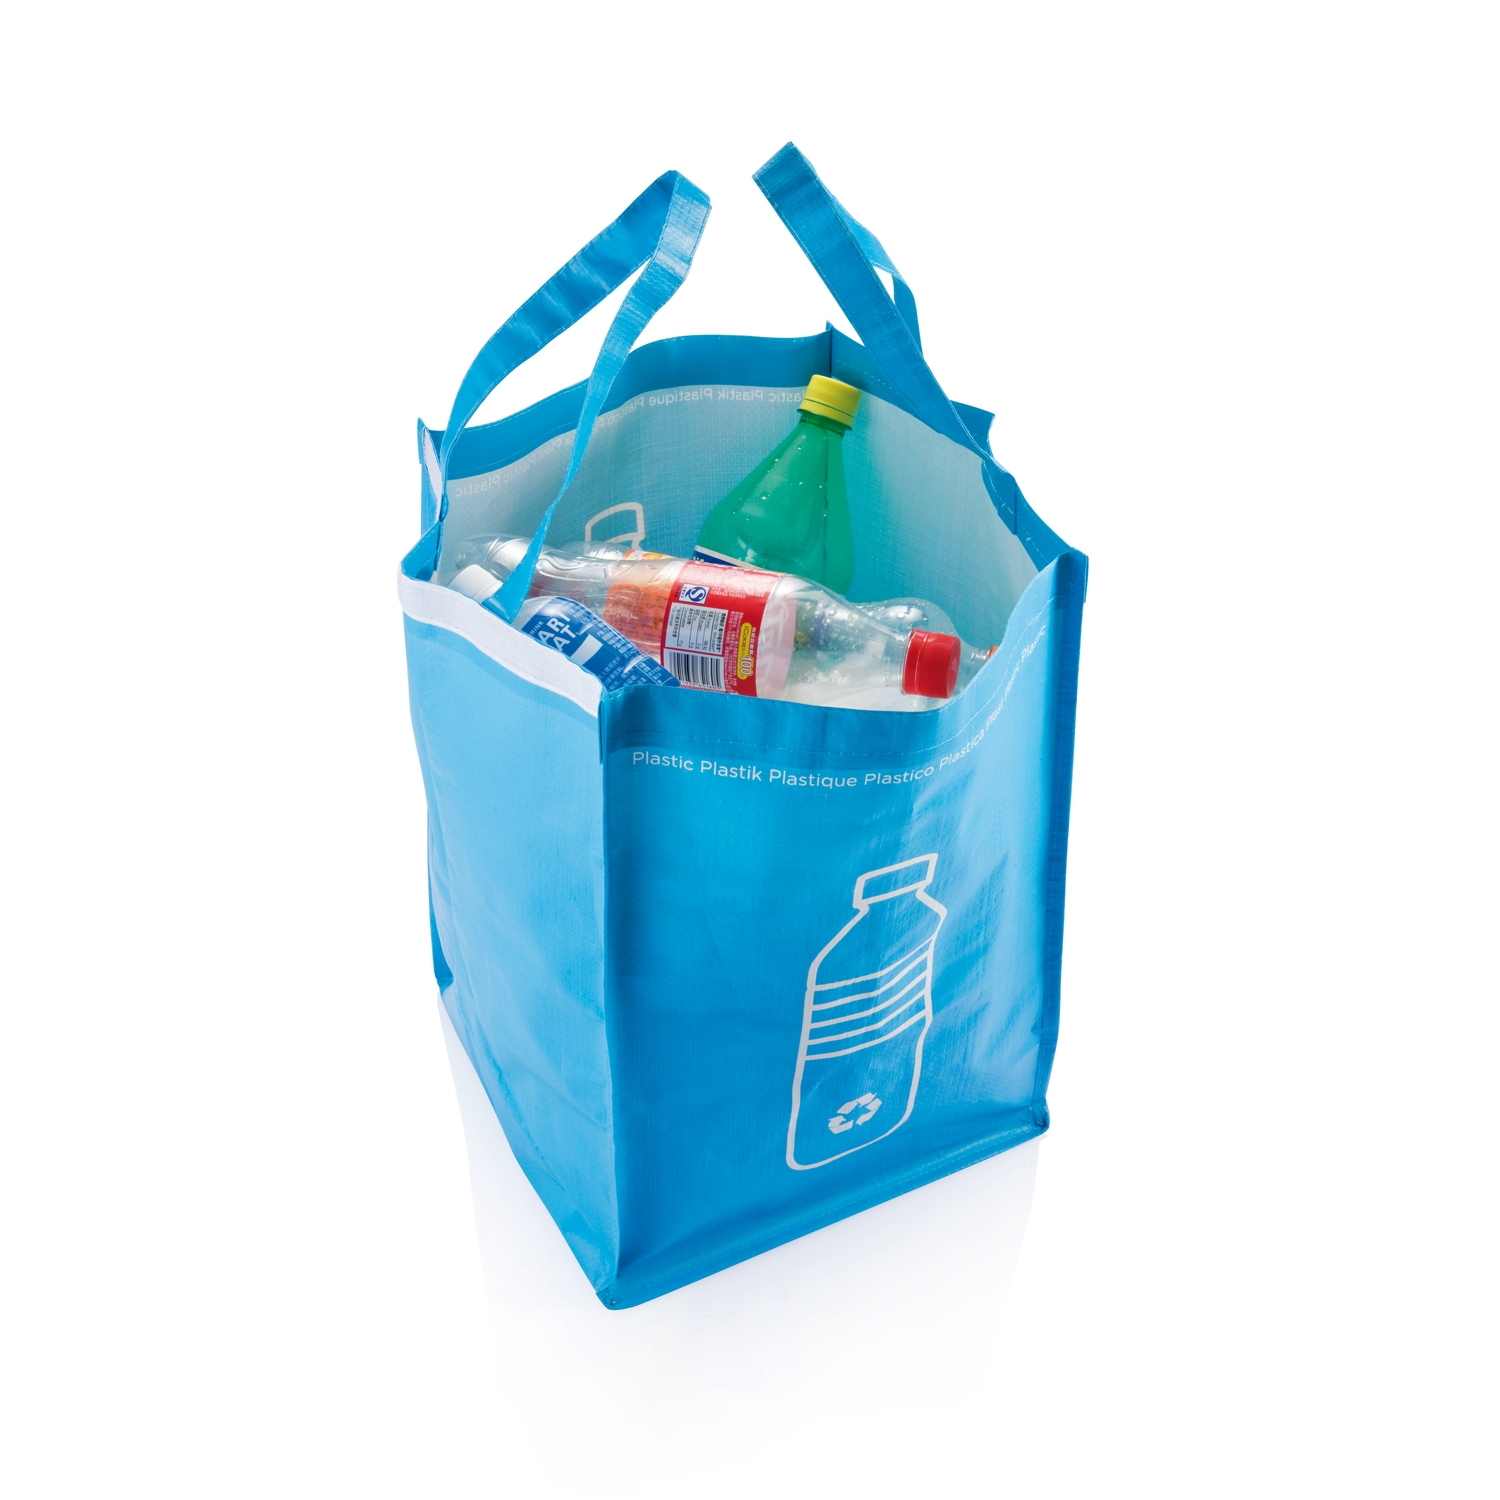 3 сумки для сортировки мусора - купить по цене 1 руб в Москве в интернет-магазине Anyluxury